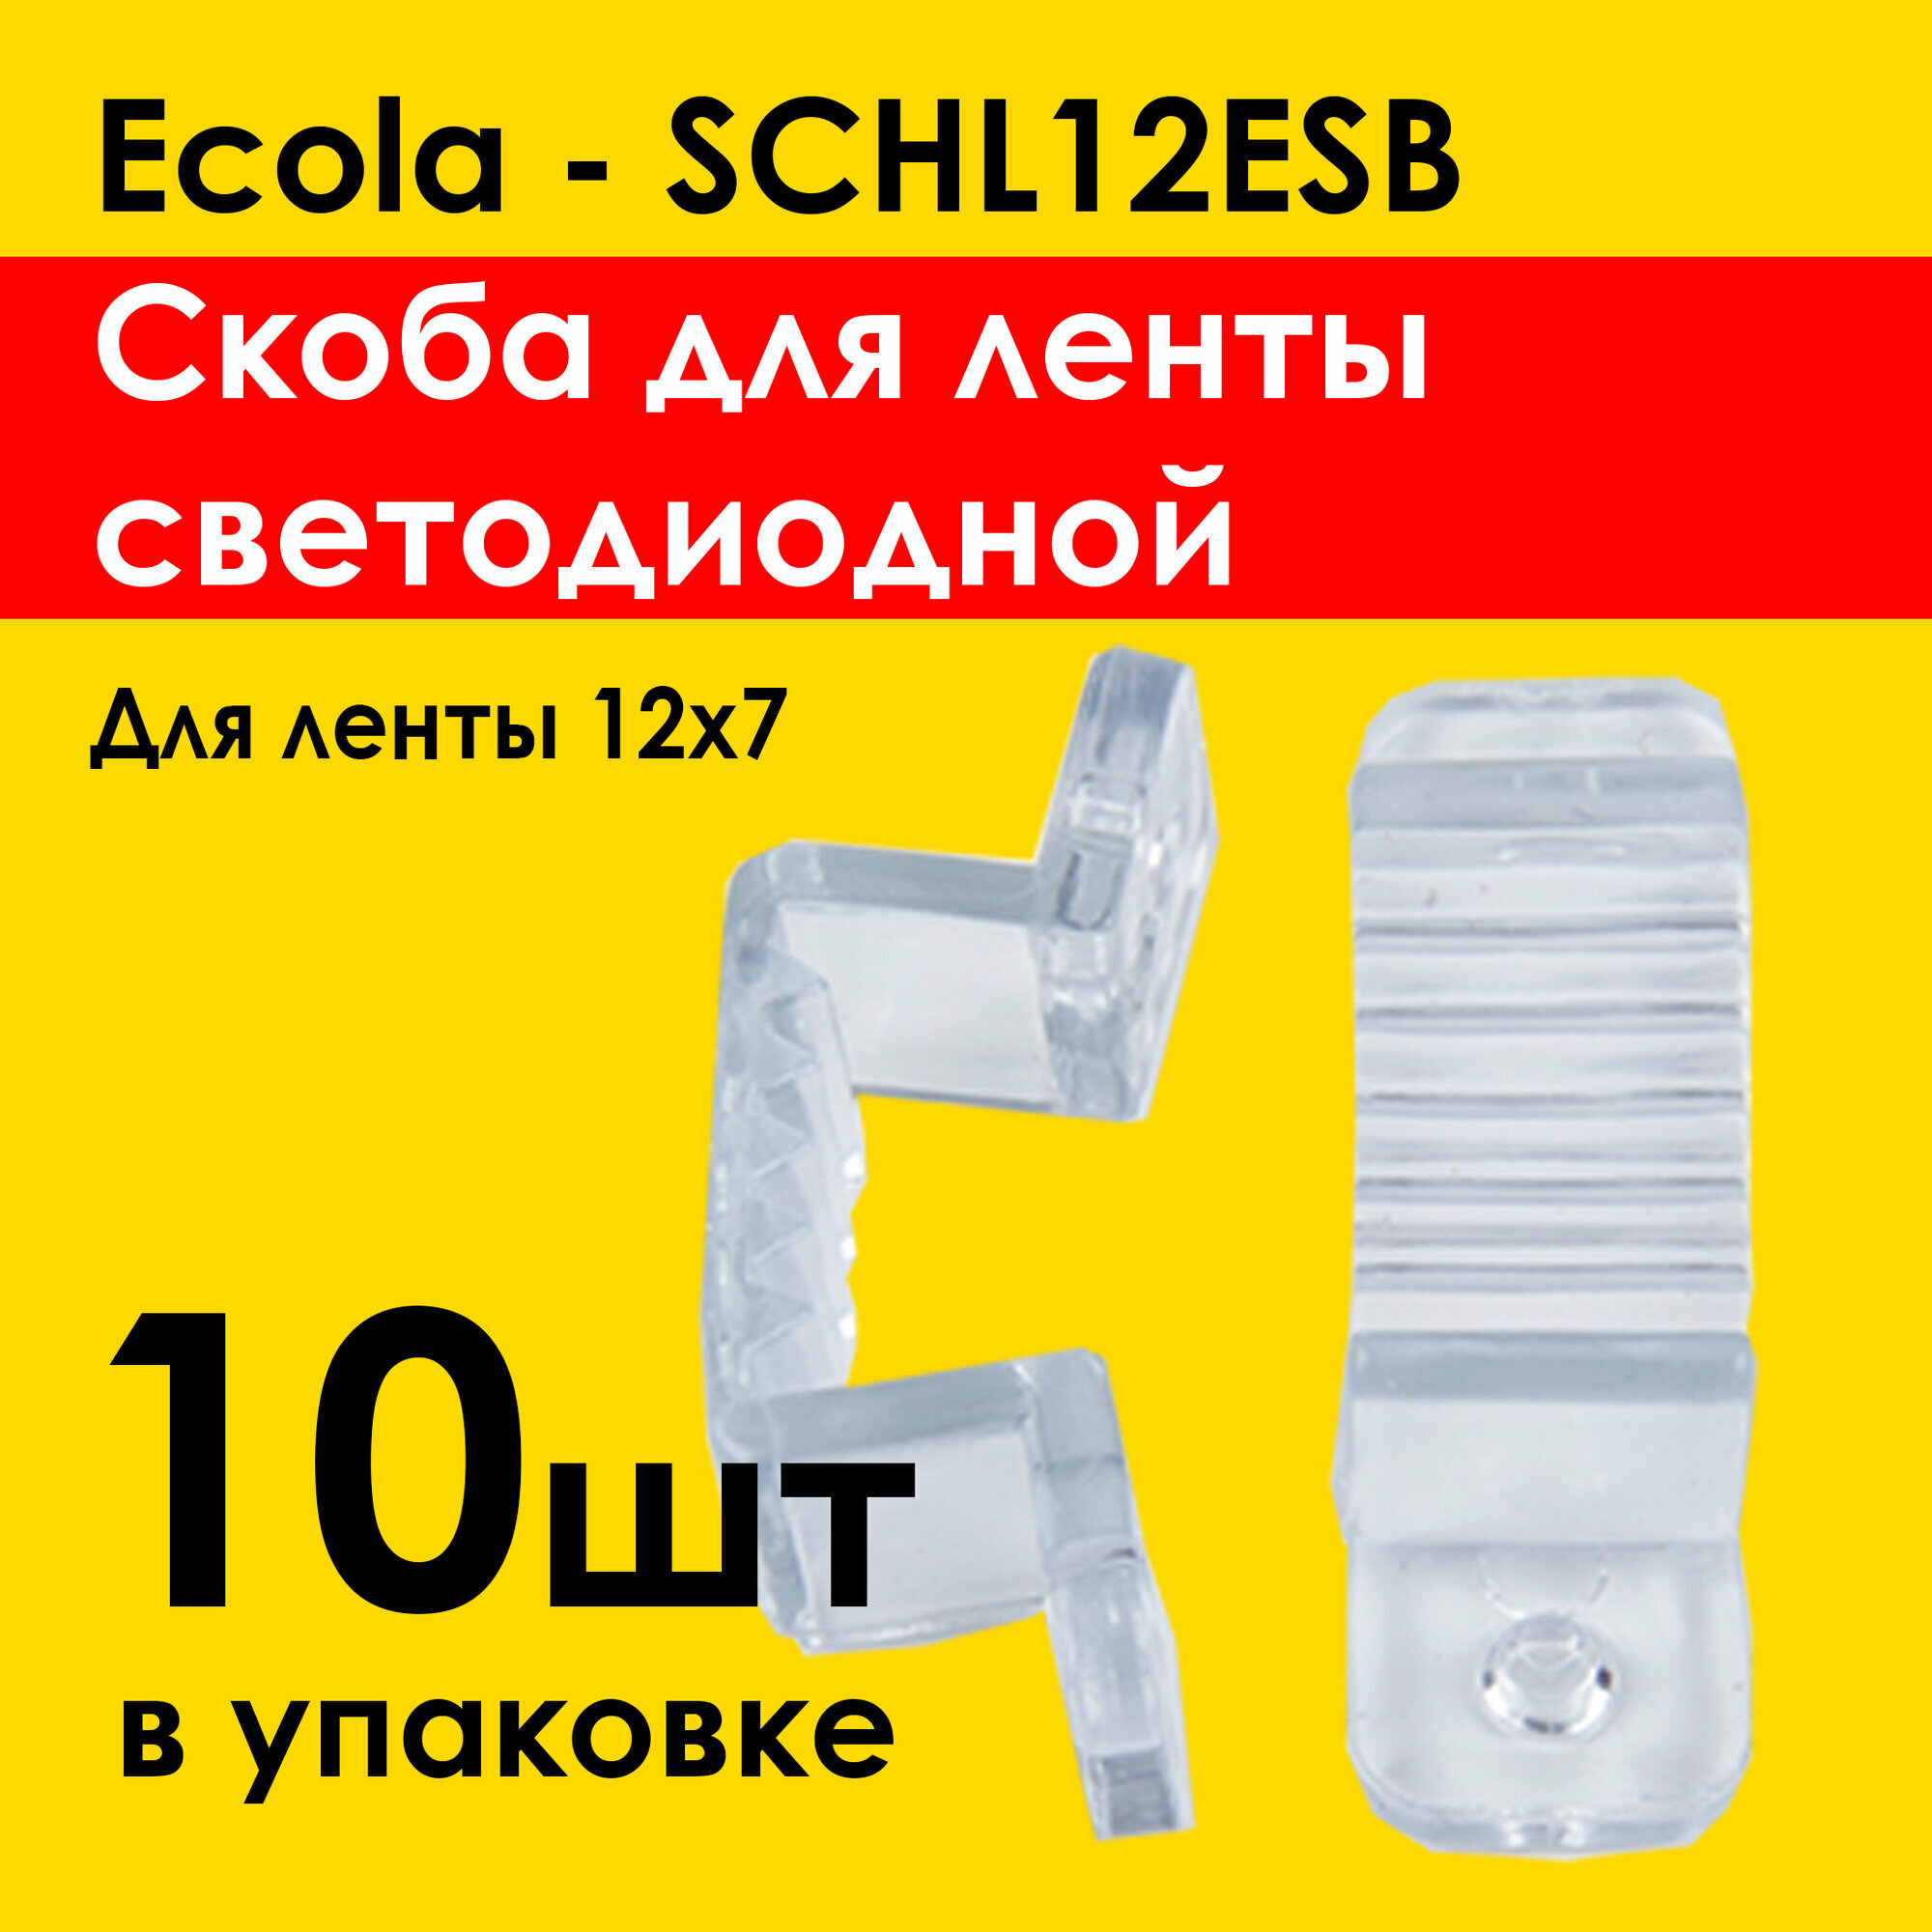 Крепление для ленты Ecola (10шт) SCHL12ESB - скоба для светодиодной ленты 12х7